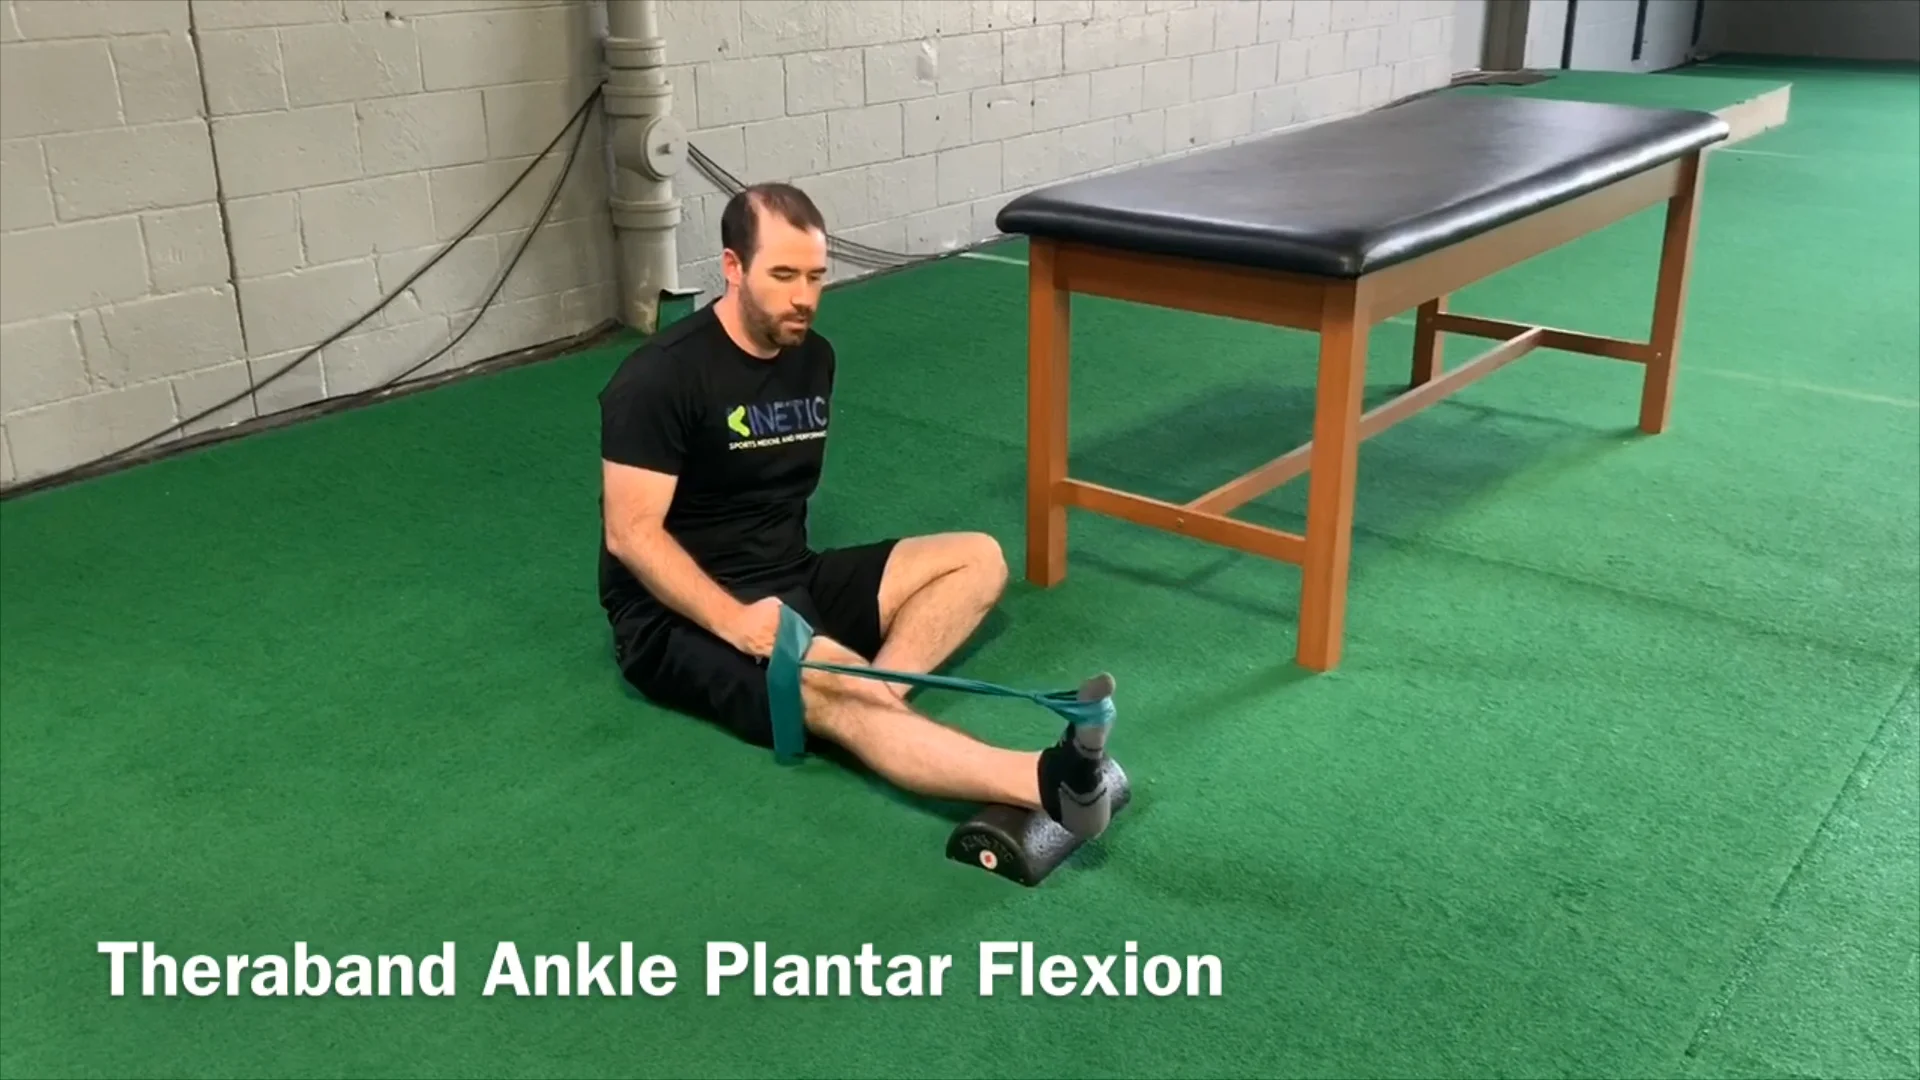 Ankle Plantar Flexion Stretch 